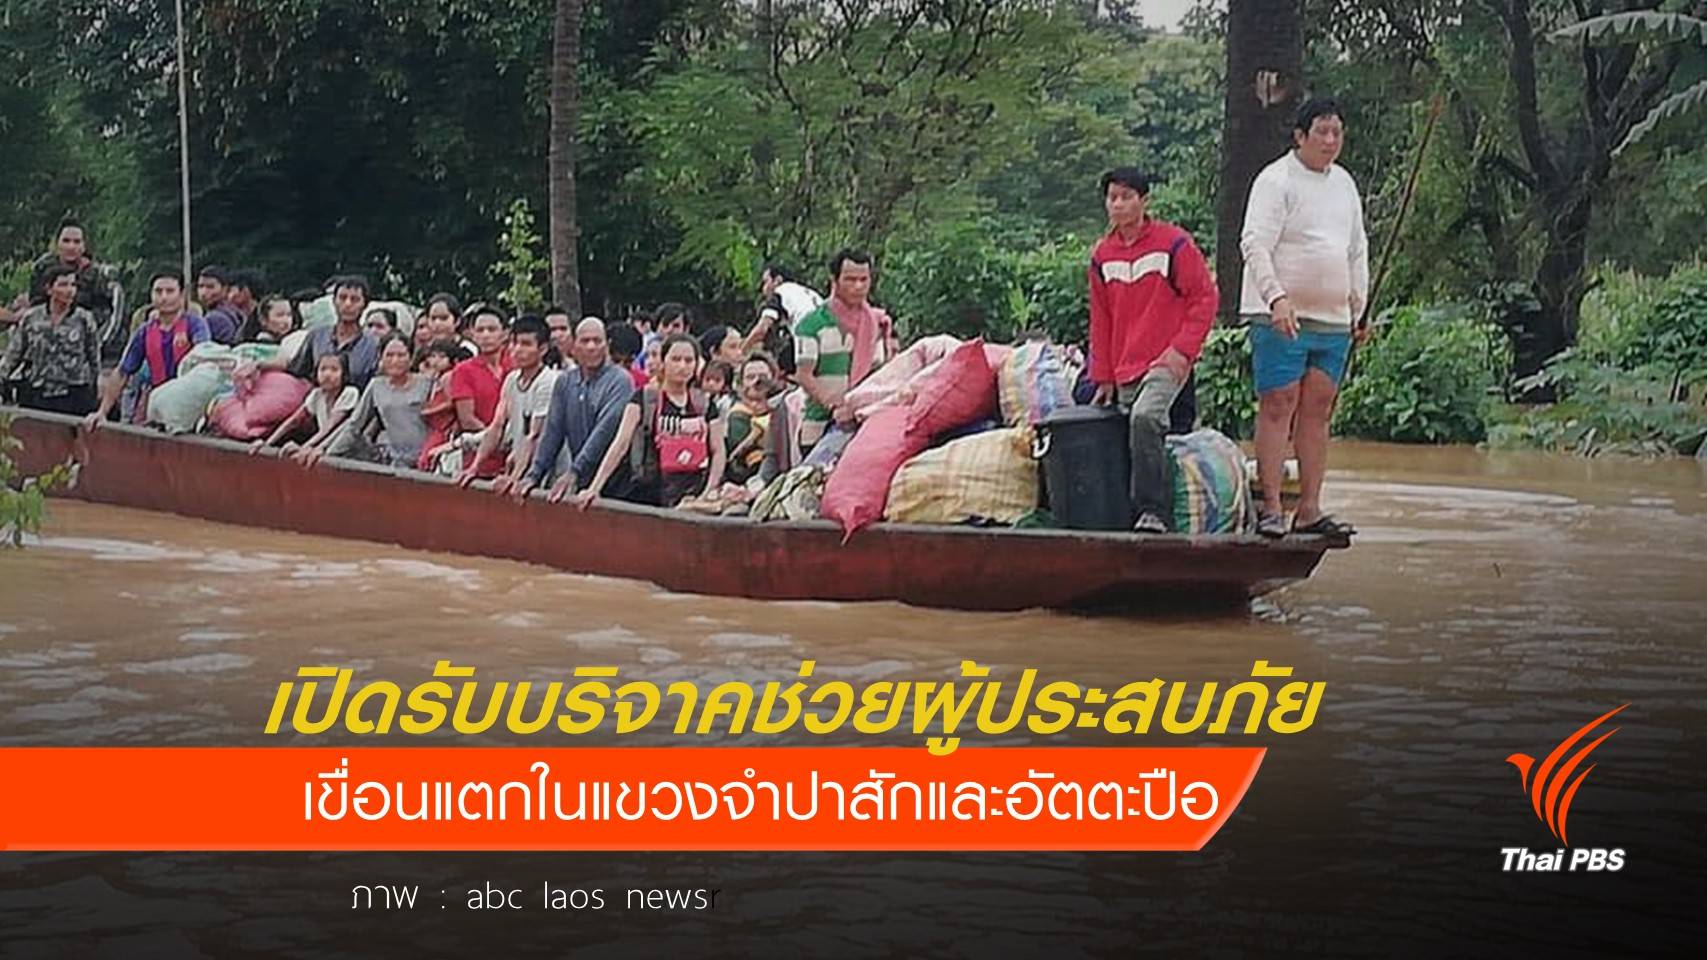 สถานทูตไทยเปิดรับบริจาคช่วยผู้ประสบภัยเขื่อนแตก